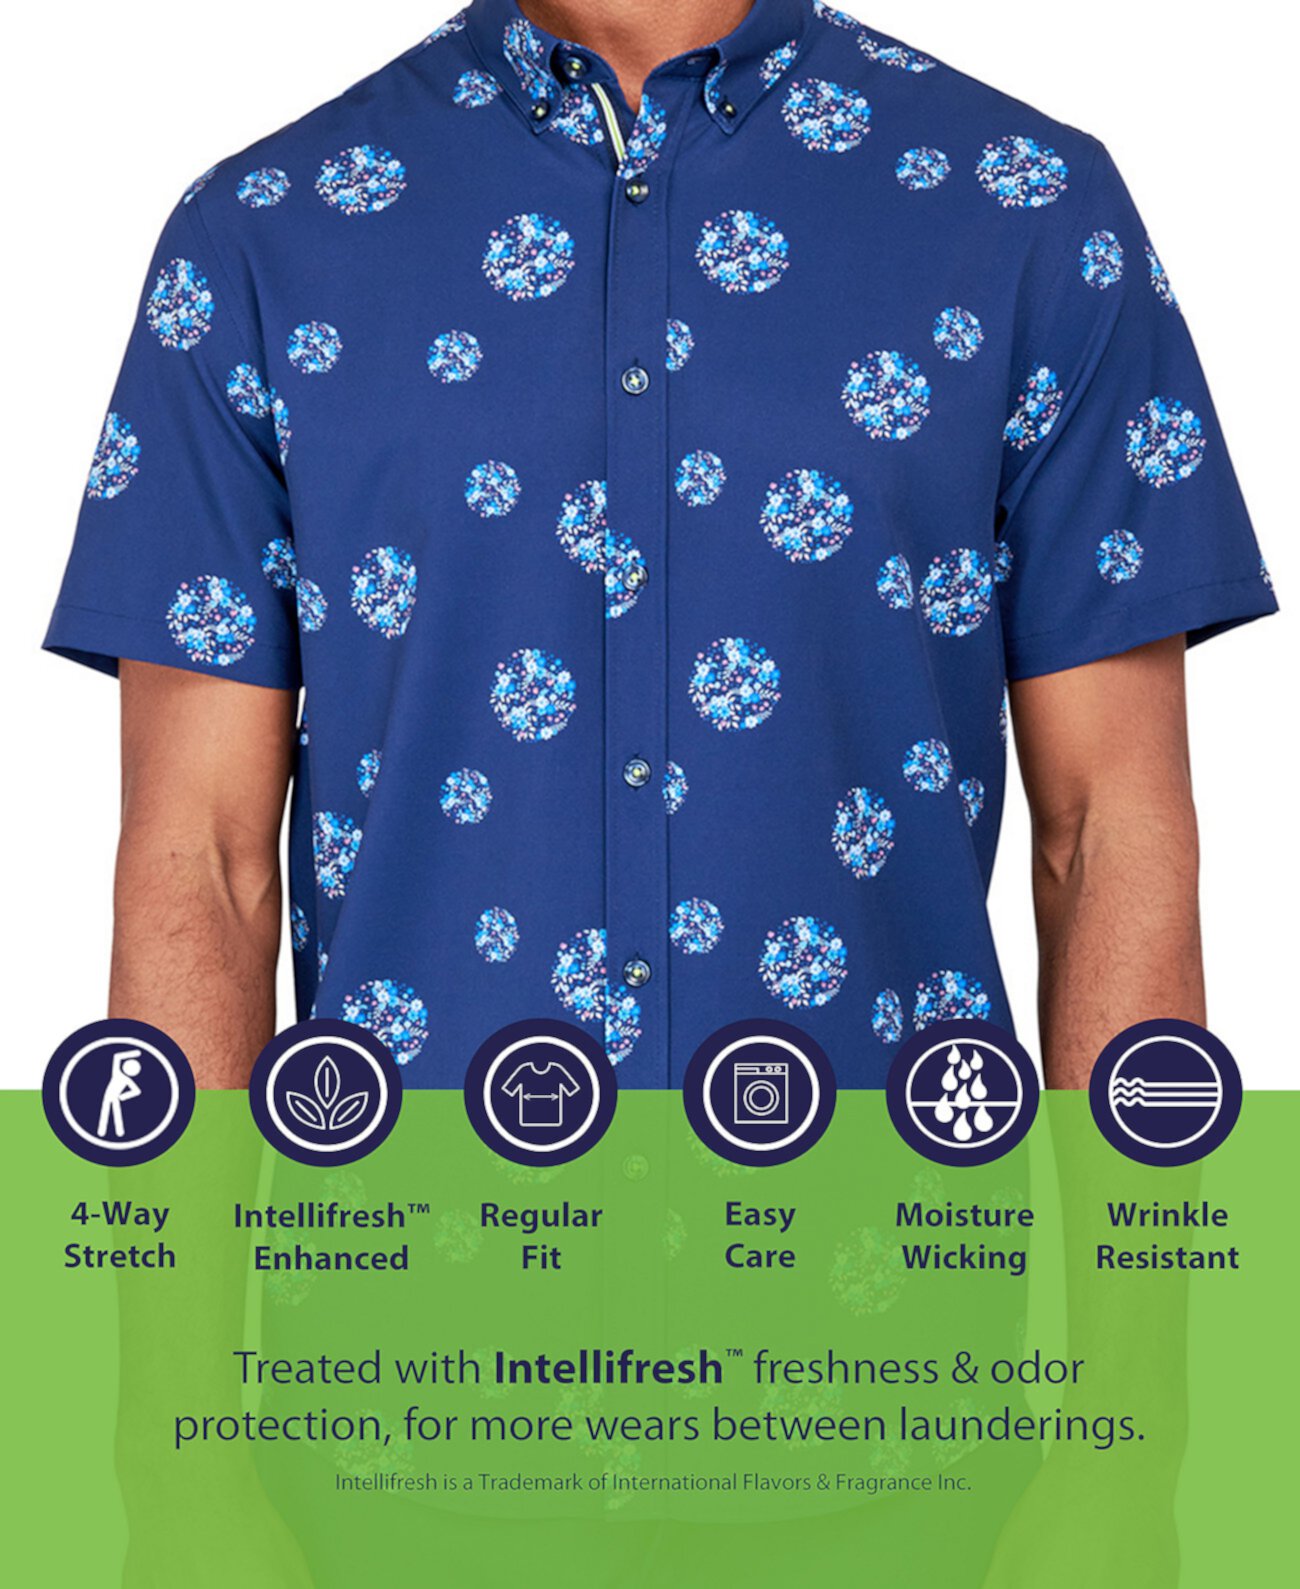 Мужская рубашка на пуговицах с геометрическим рисунком без железа Performance Society of Threads